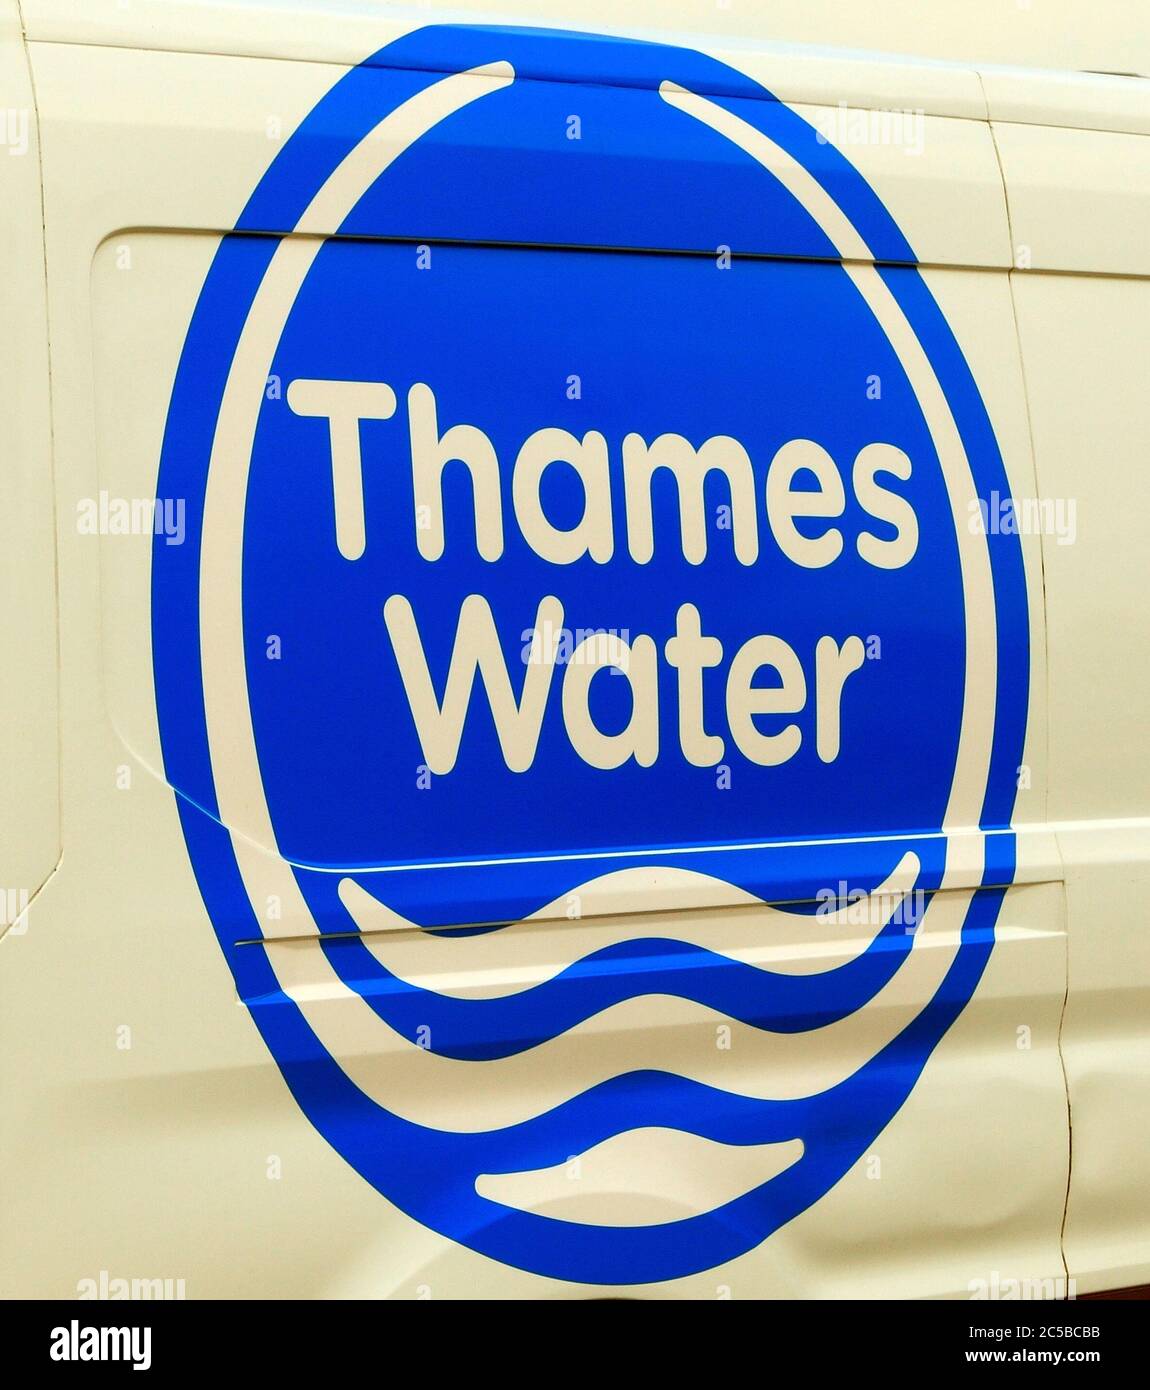 Tamigi Water, logo, società, van, veicolo, Inghilterra, Regno Unito Foto Stock